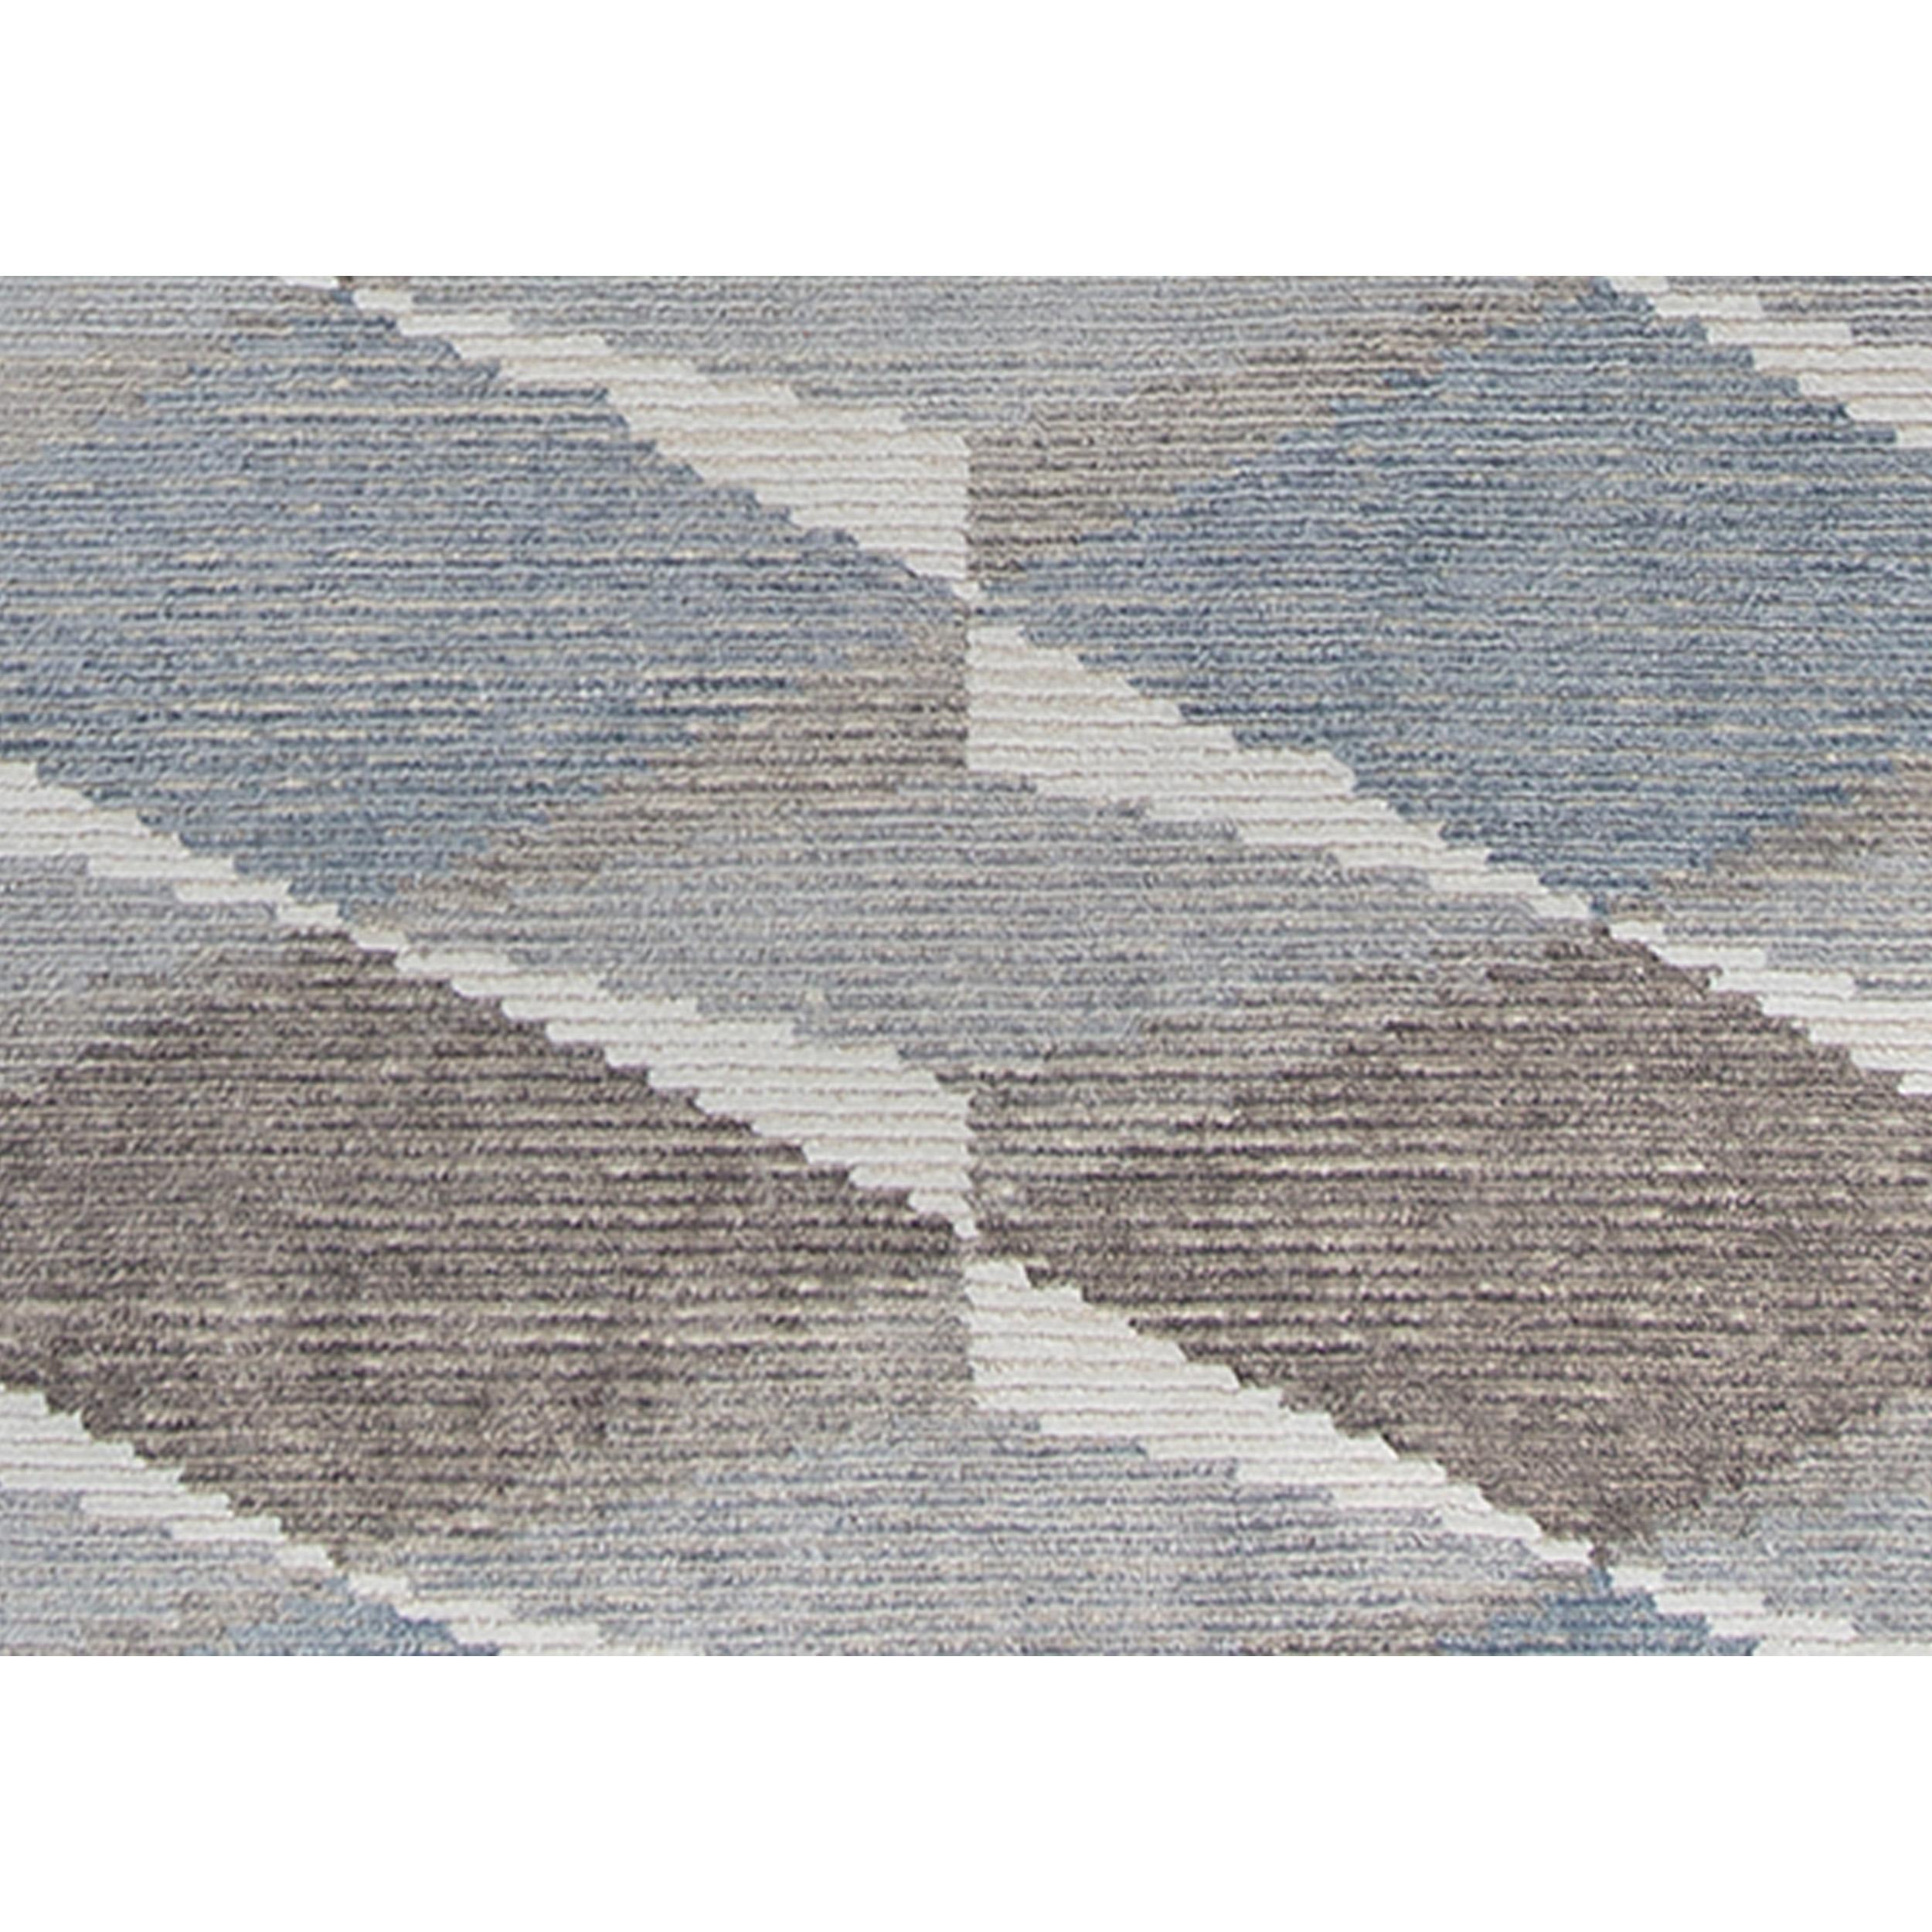 Ce tapis sophistiqué tissé à la main crée un sens subtil de la texture. Des motifs contemporains et des tons neutres actualisés qui s'intègrent parfaitement à tous les environnements. Le toucher et la vue sont ravis dans ce tapis. Un mélange unique